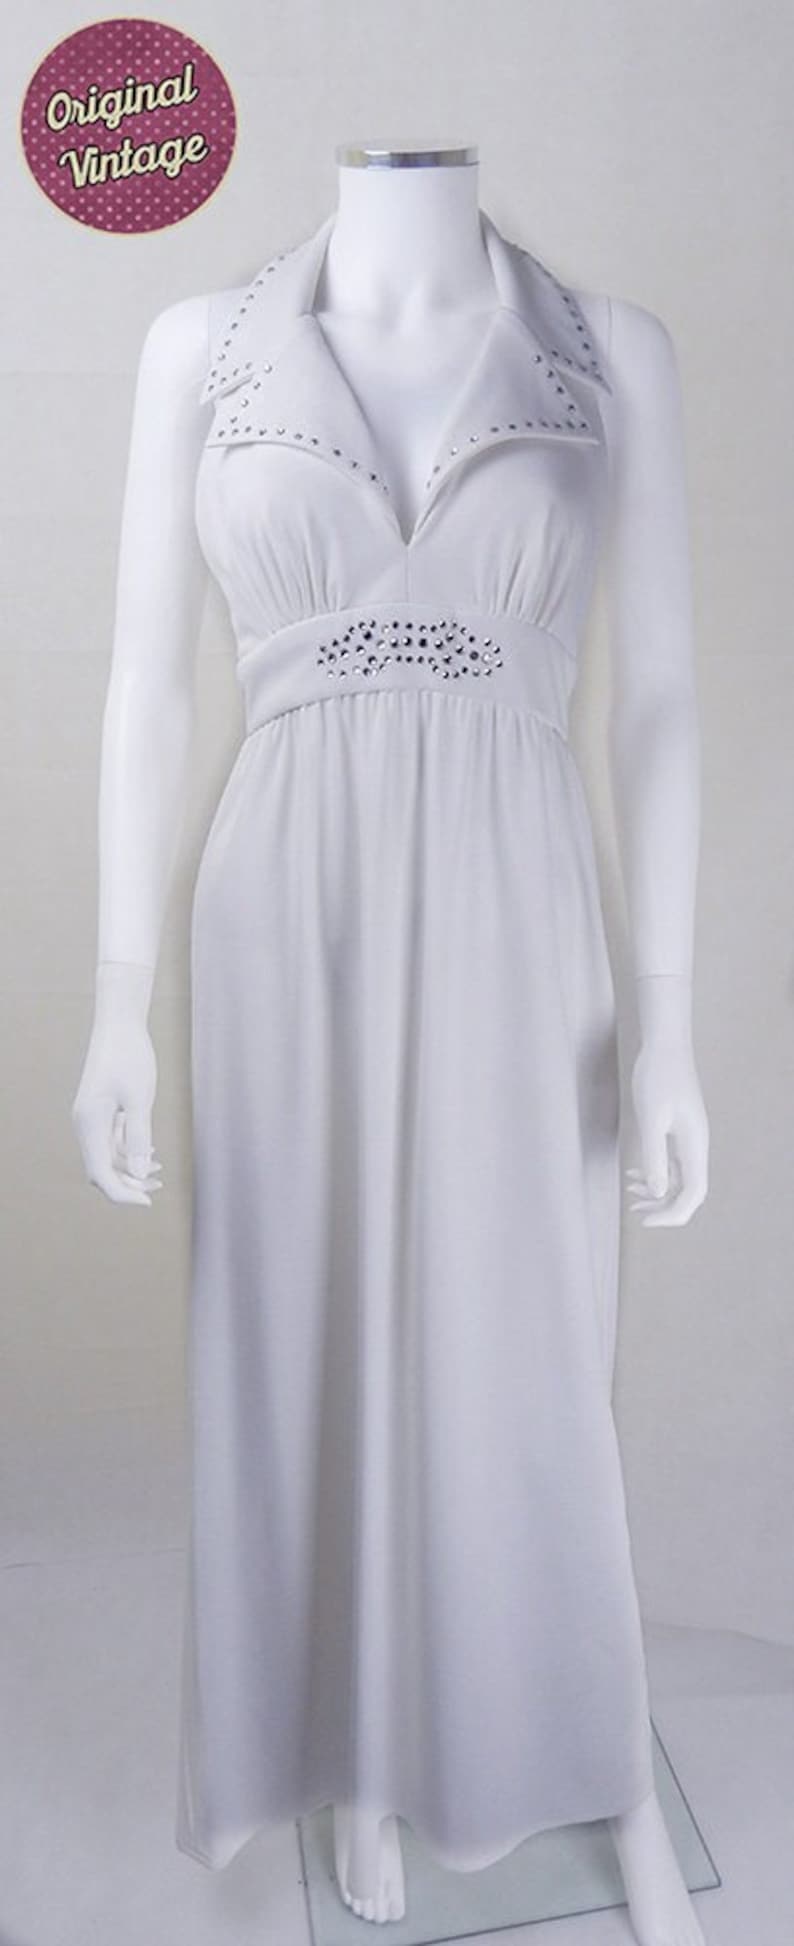 Halston Vintage Dress Original 1970s Designer Vintage Halston White Halter Dress UK Size 10 designer dress, 1970s Halston dress zdjęcie 1